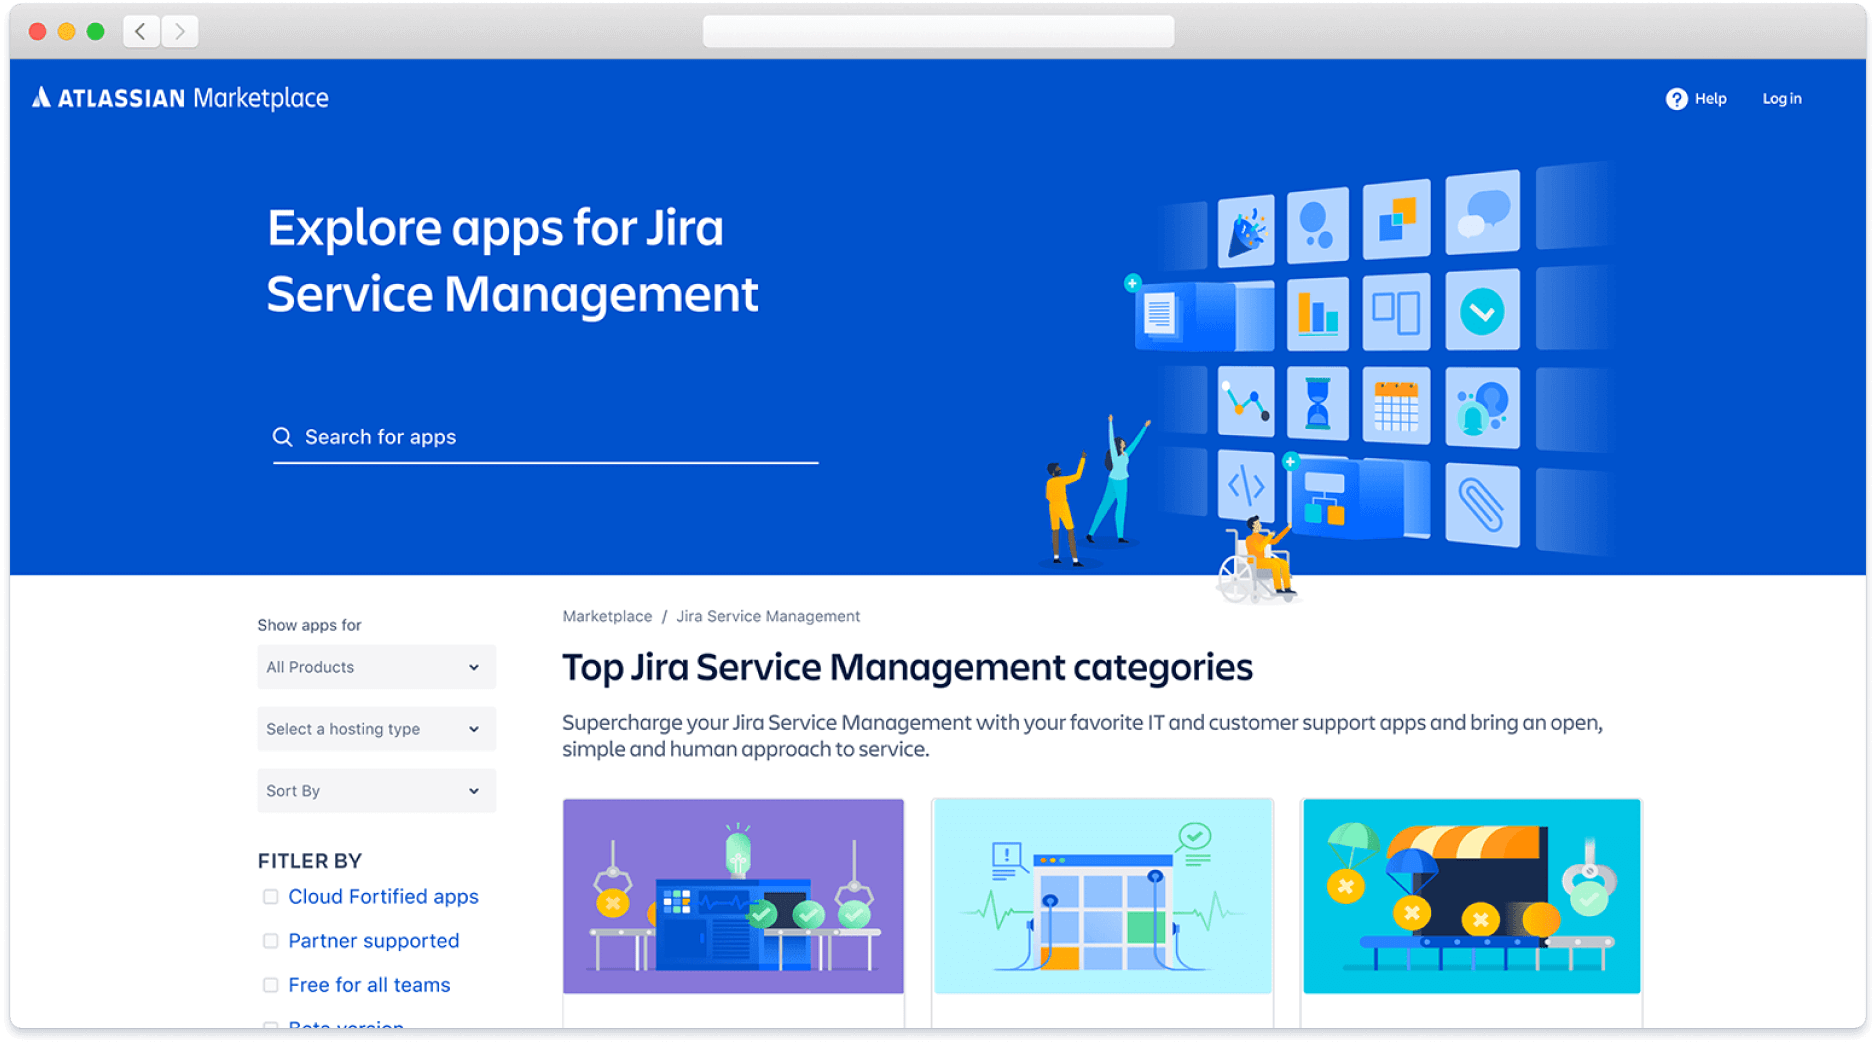 Zapoznaj się z aplikacjami ze sklepu Atlassian Marketplace przeznaczonymi do Jira Service Management